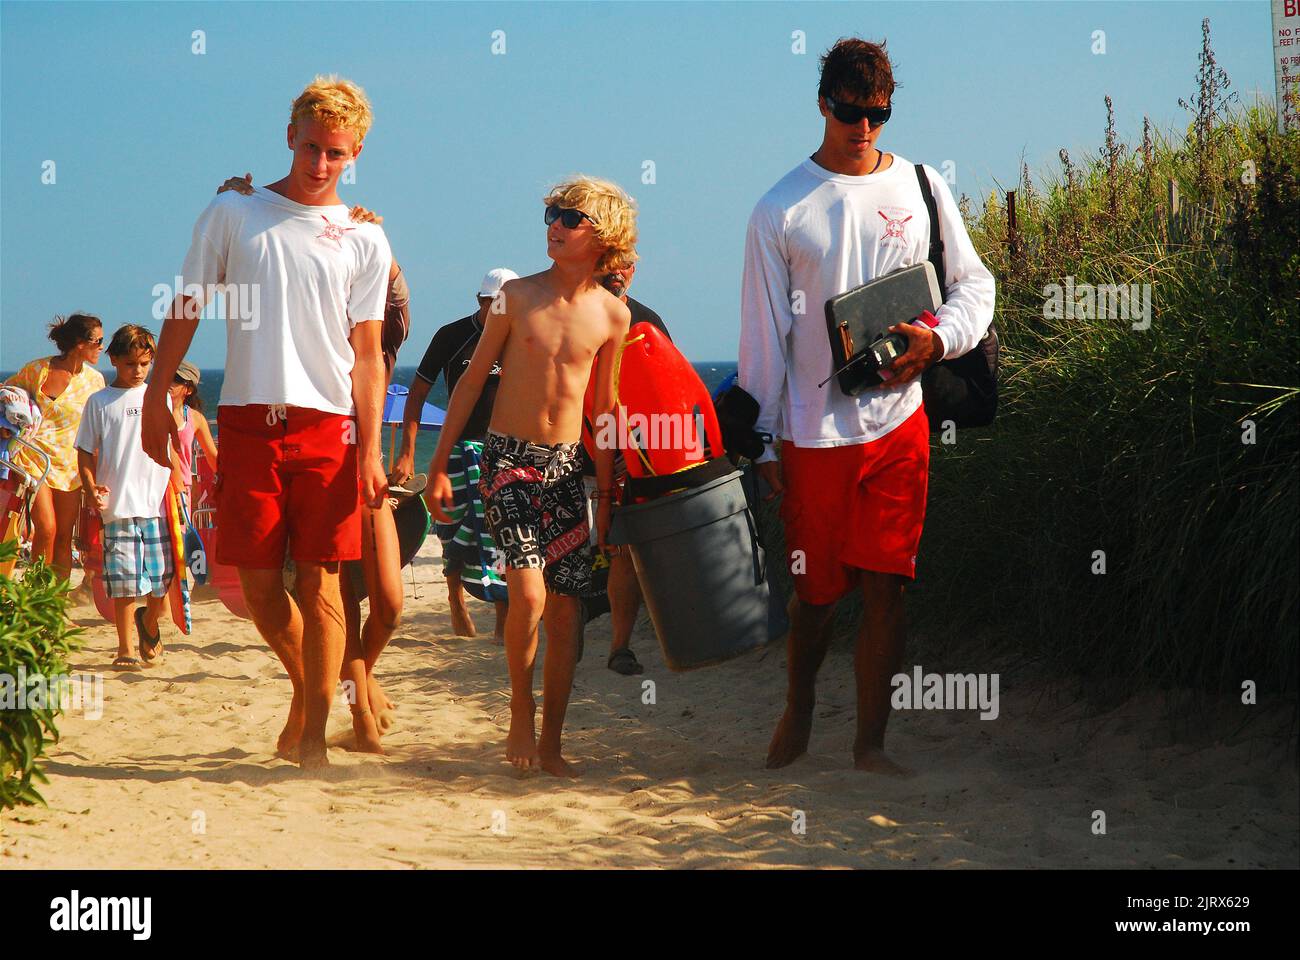 Un jeune garçon marche et parle à deux sauveteurs en quittant la plage, portant leur équipement lors d'une journée de vacances d'été à la plage Banque D'Images